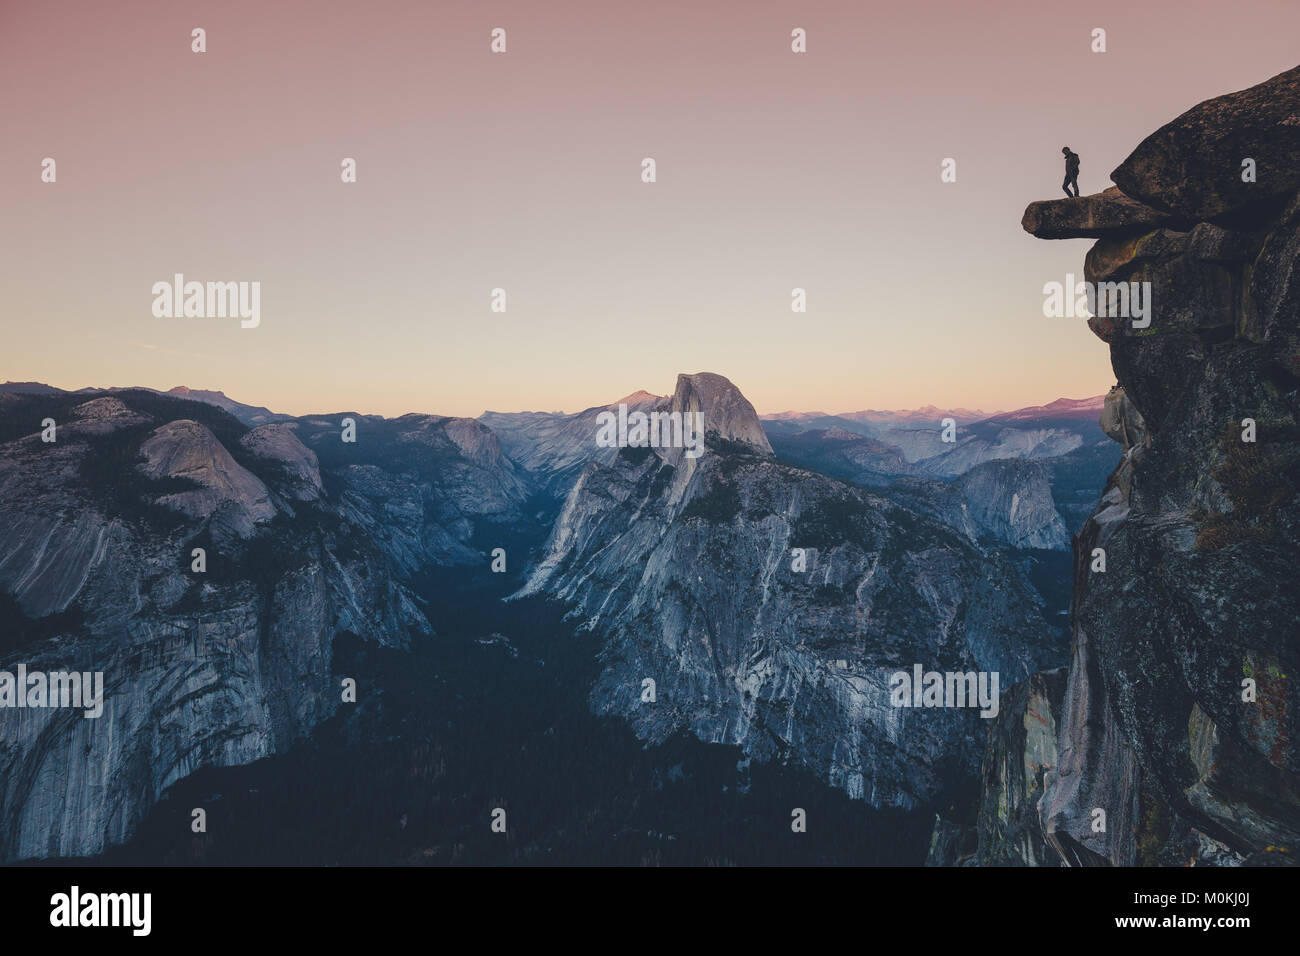 Un intrepido escursionista è in piedi su una roccia a strapiombo guardando verso il famoso Half Dome nel Parco Nazionale di Yosemite nel crepuscolo al tramonto, CALIFORNIA, STATI UNITI D'AMERICA Foto Stock